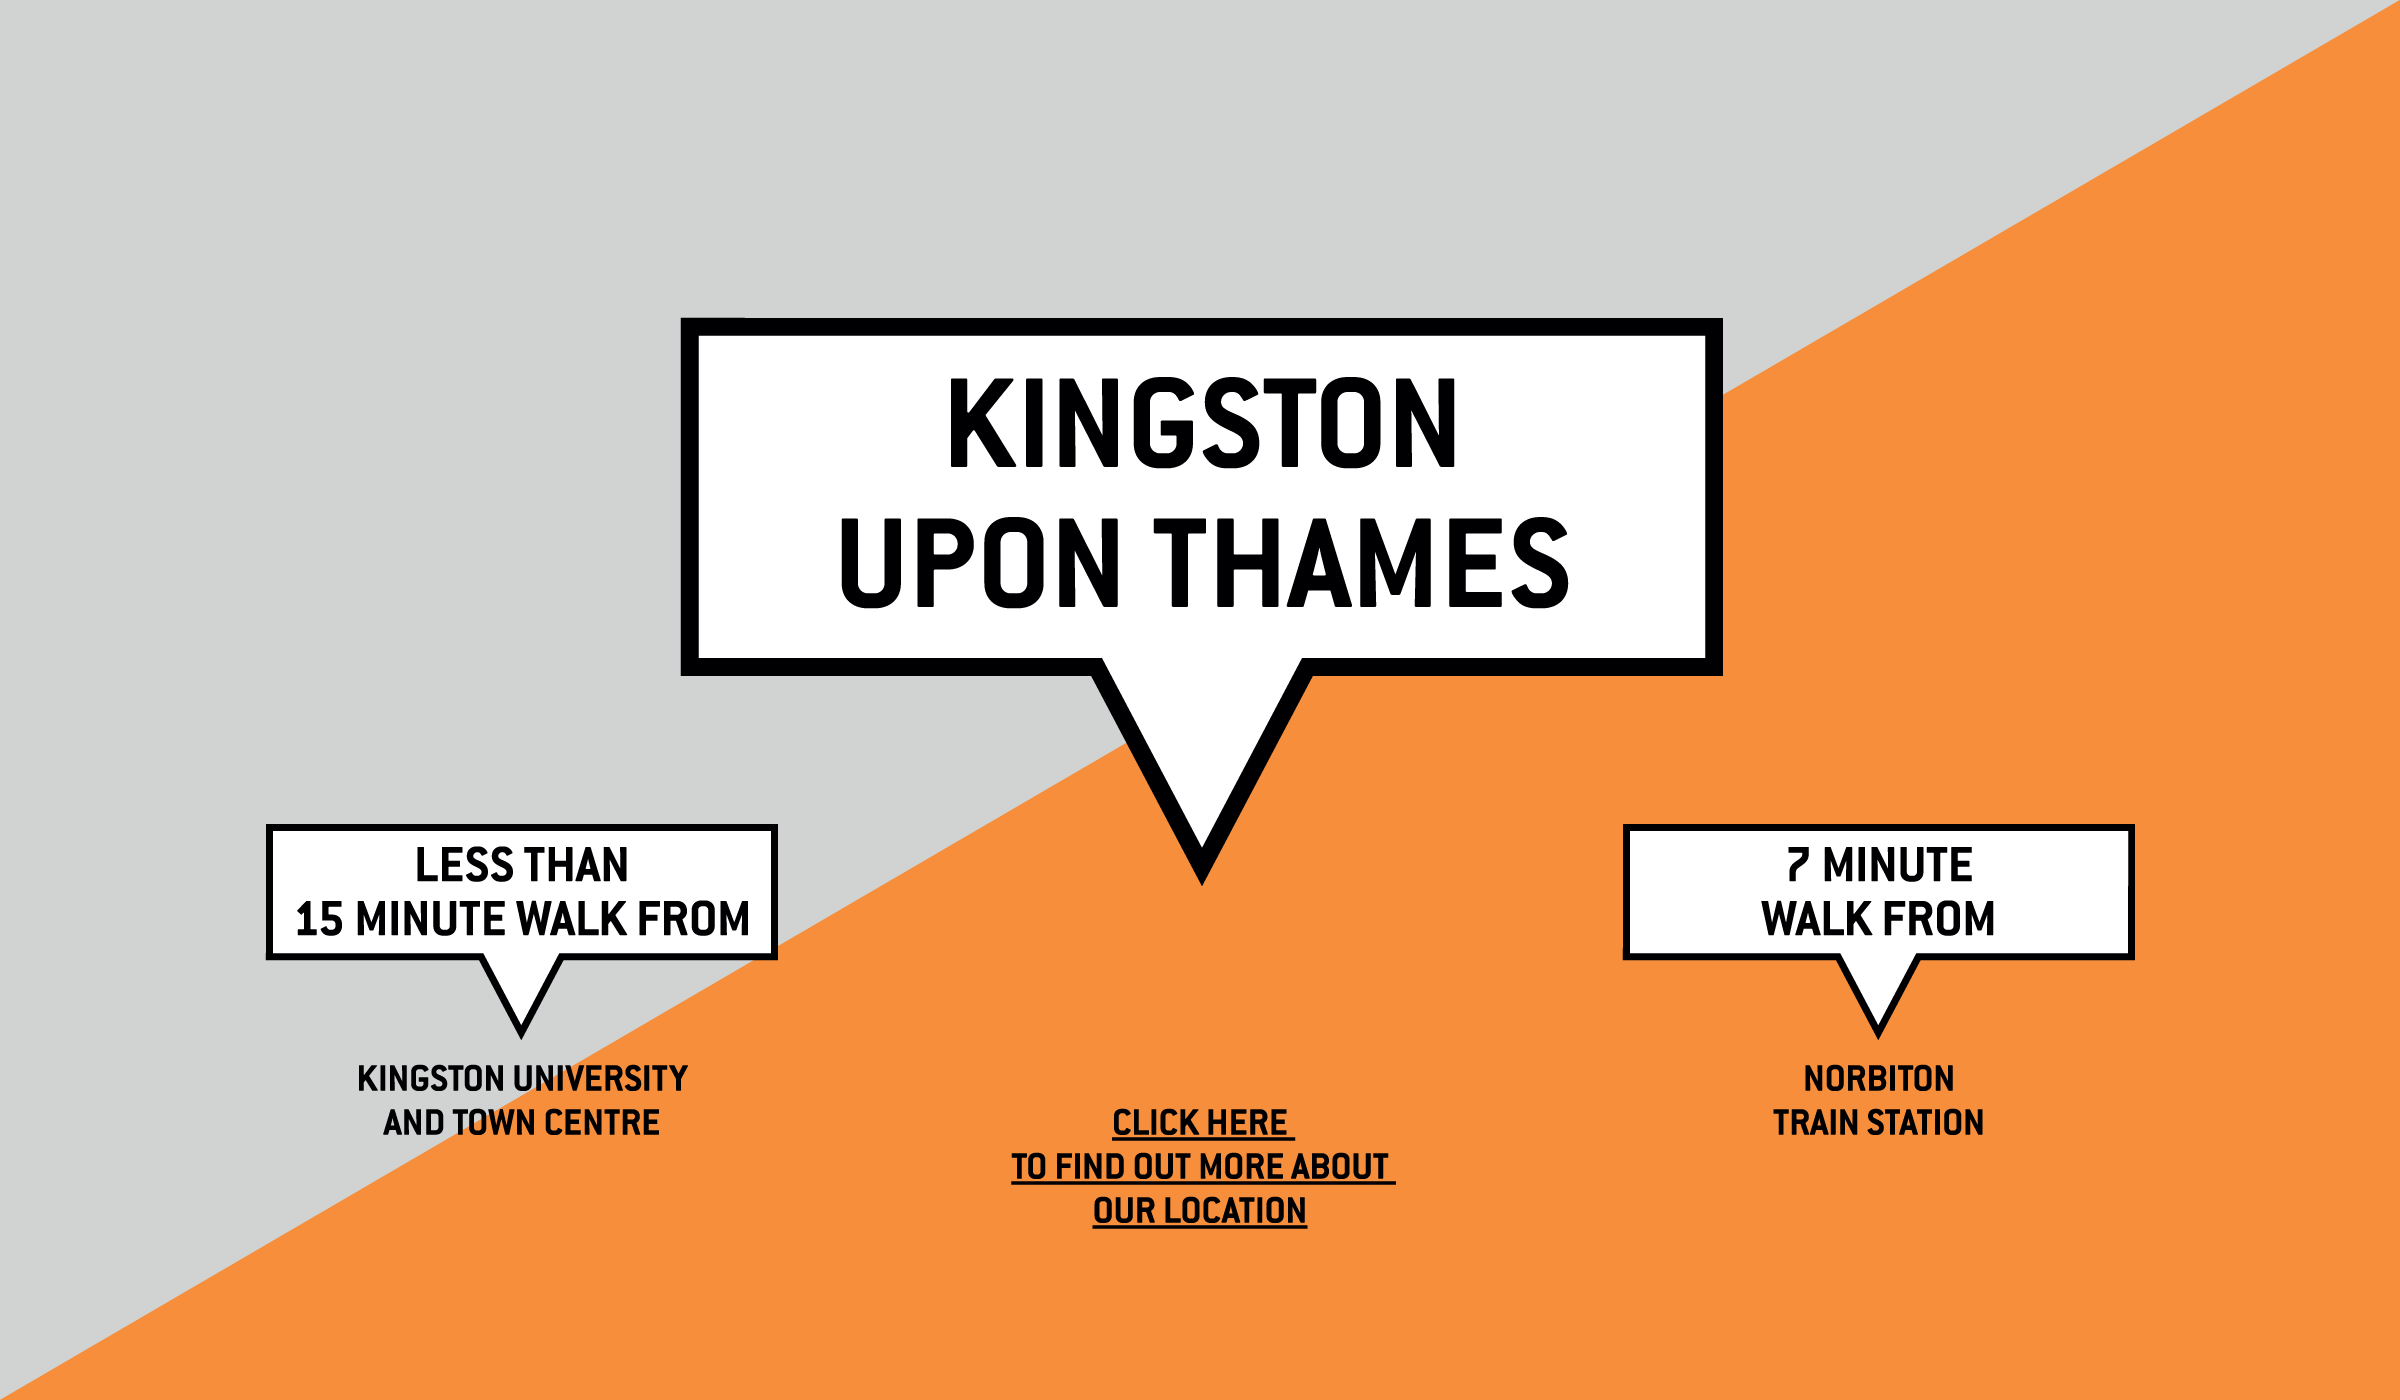 Kingston upon Thames. Close to Kingstone University